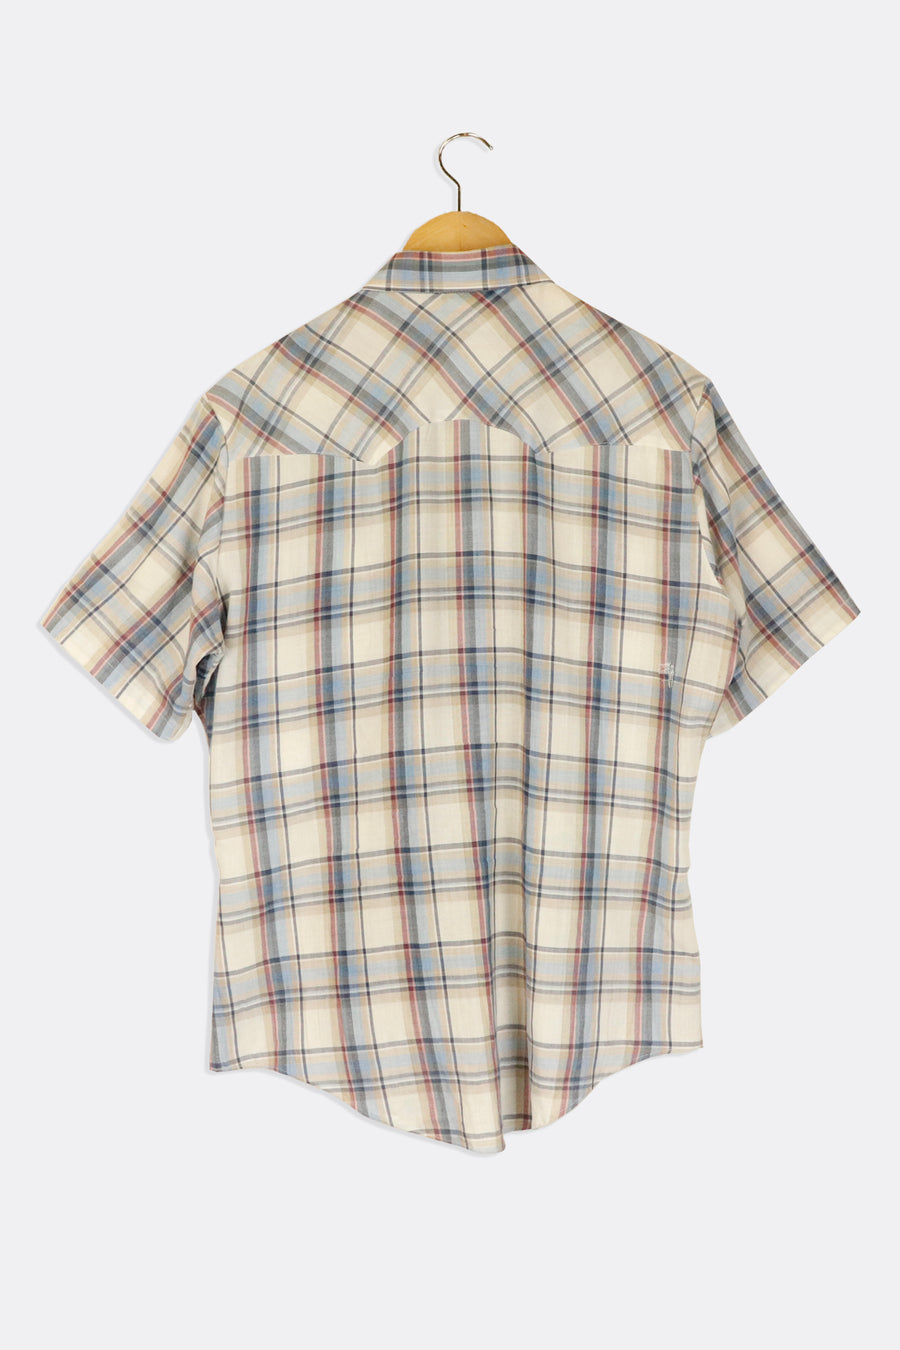 Vintage Levis Plaid Collared Button Up T Shirt Sz L